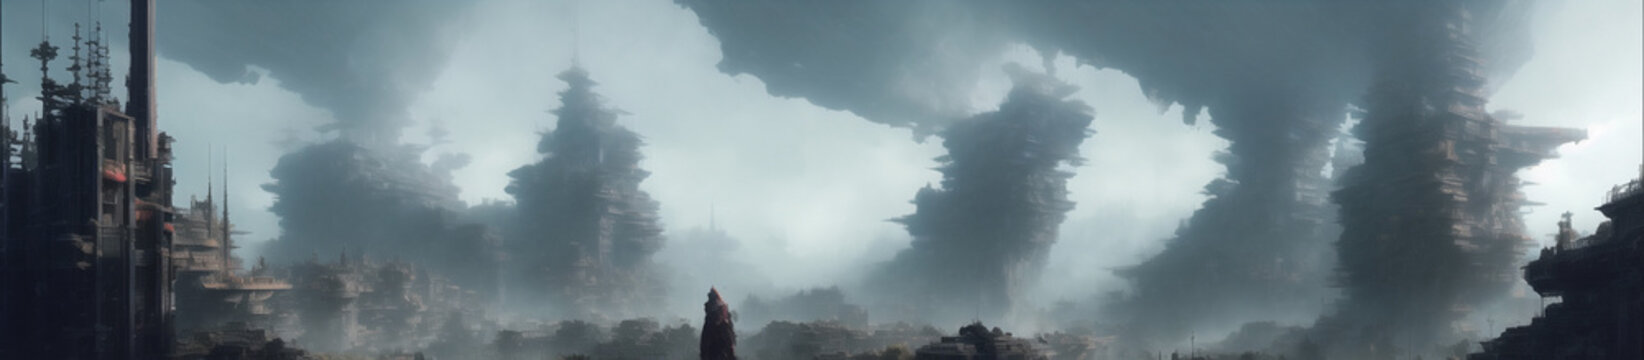 霧に包まれたゲームの世界に出てくるような壮大な崖などのイラスト